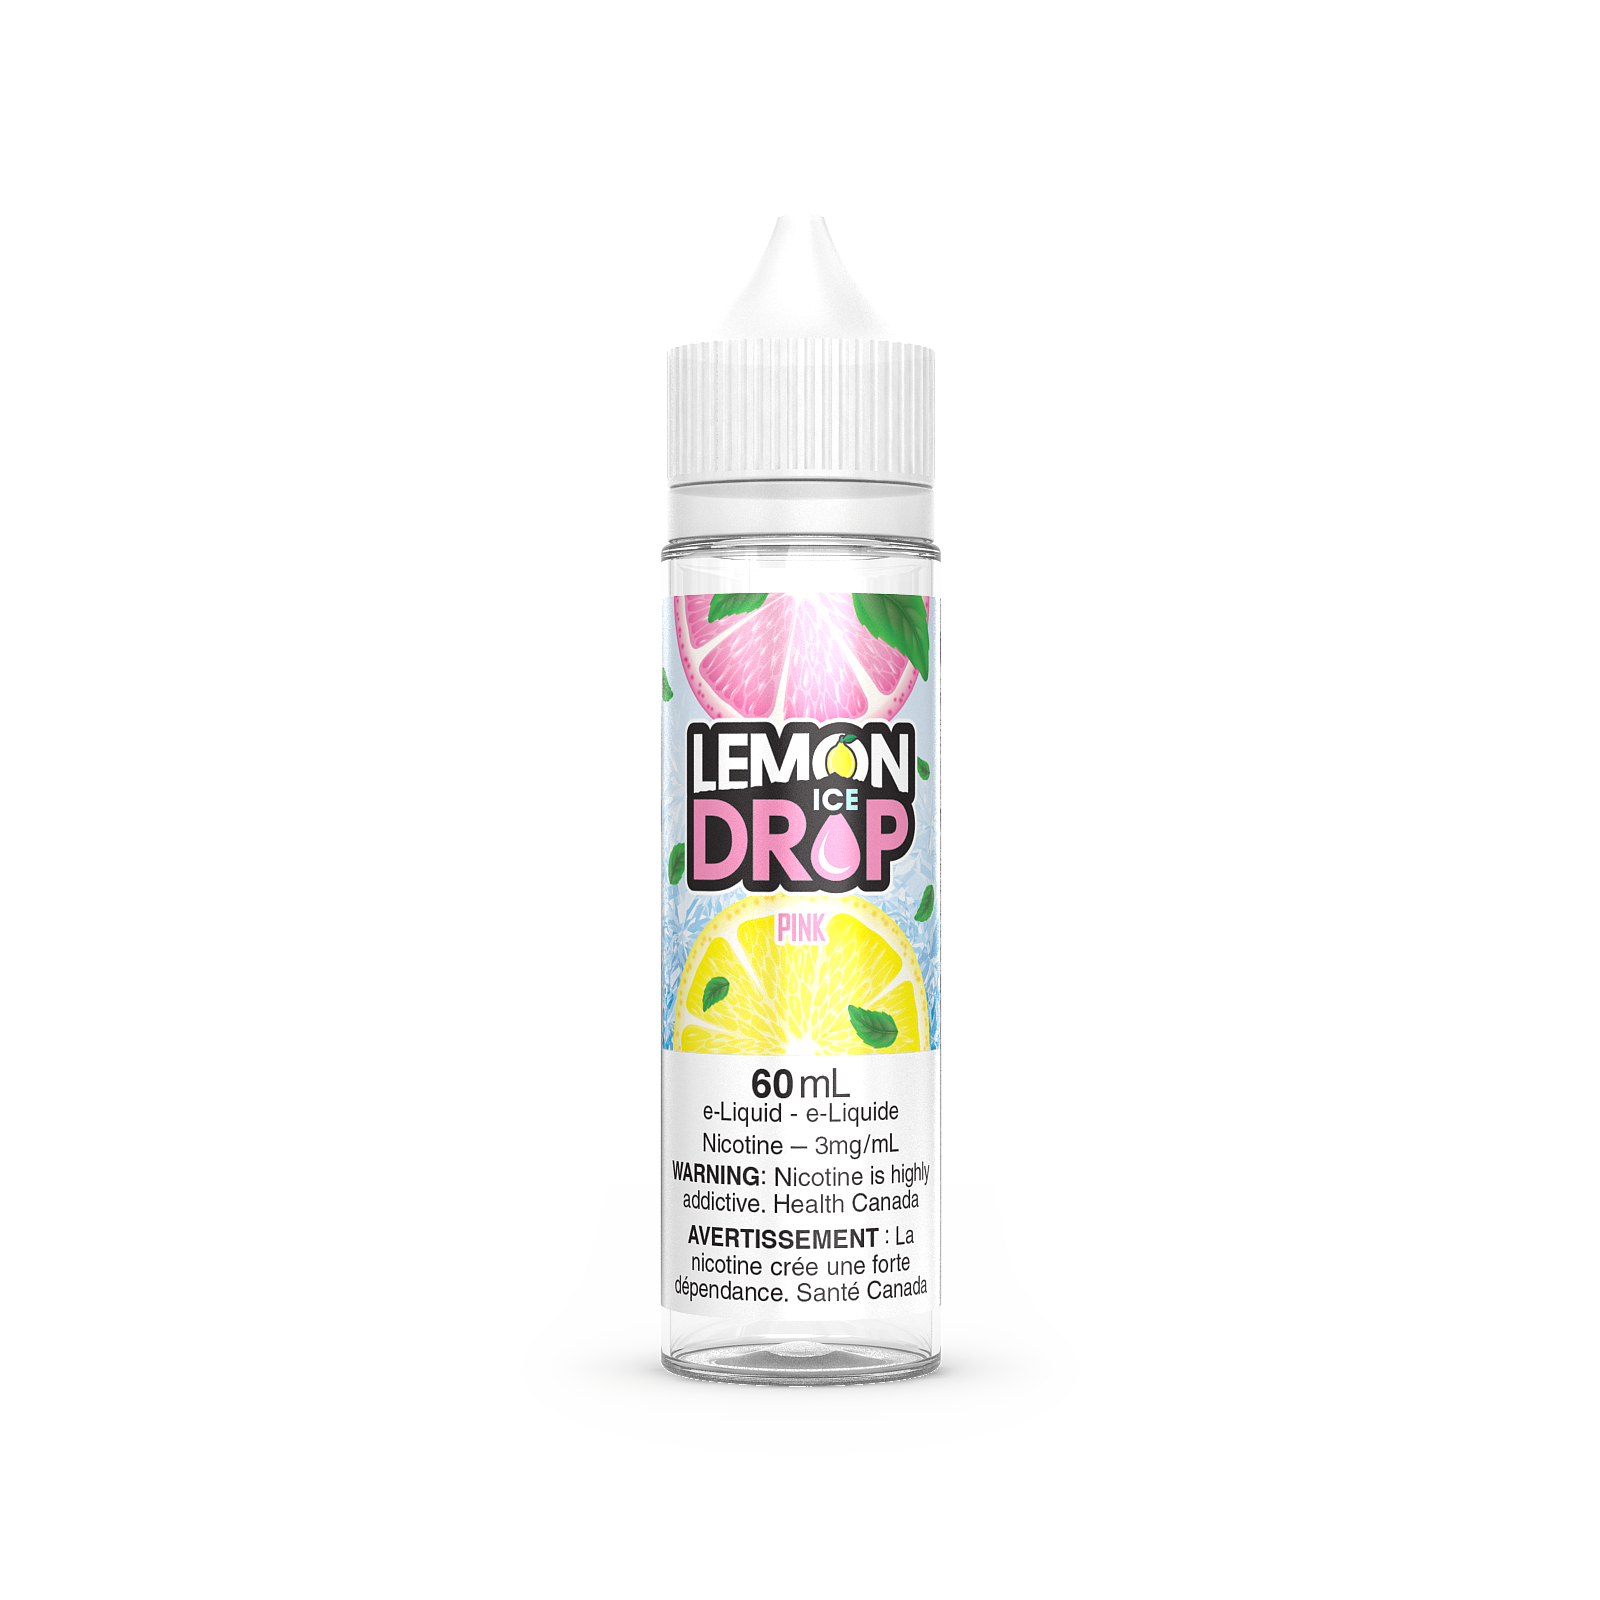 PINK - Lemon Drop ICE - 60ml - FREE BASE - E-Liquid